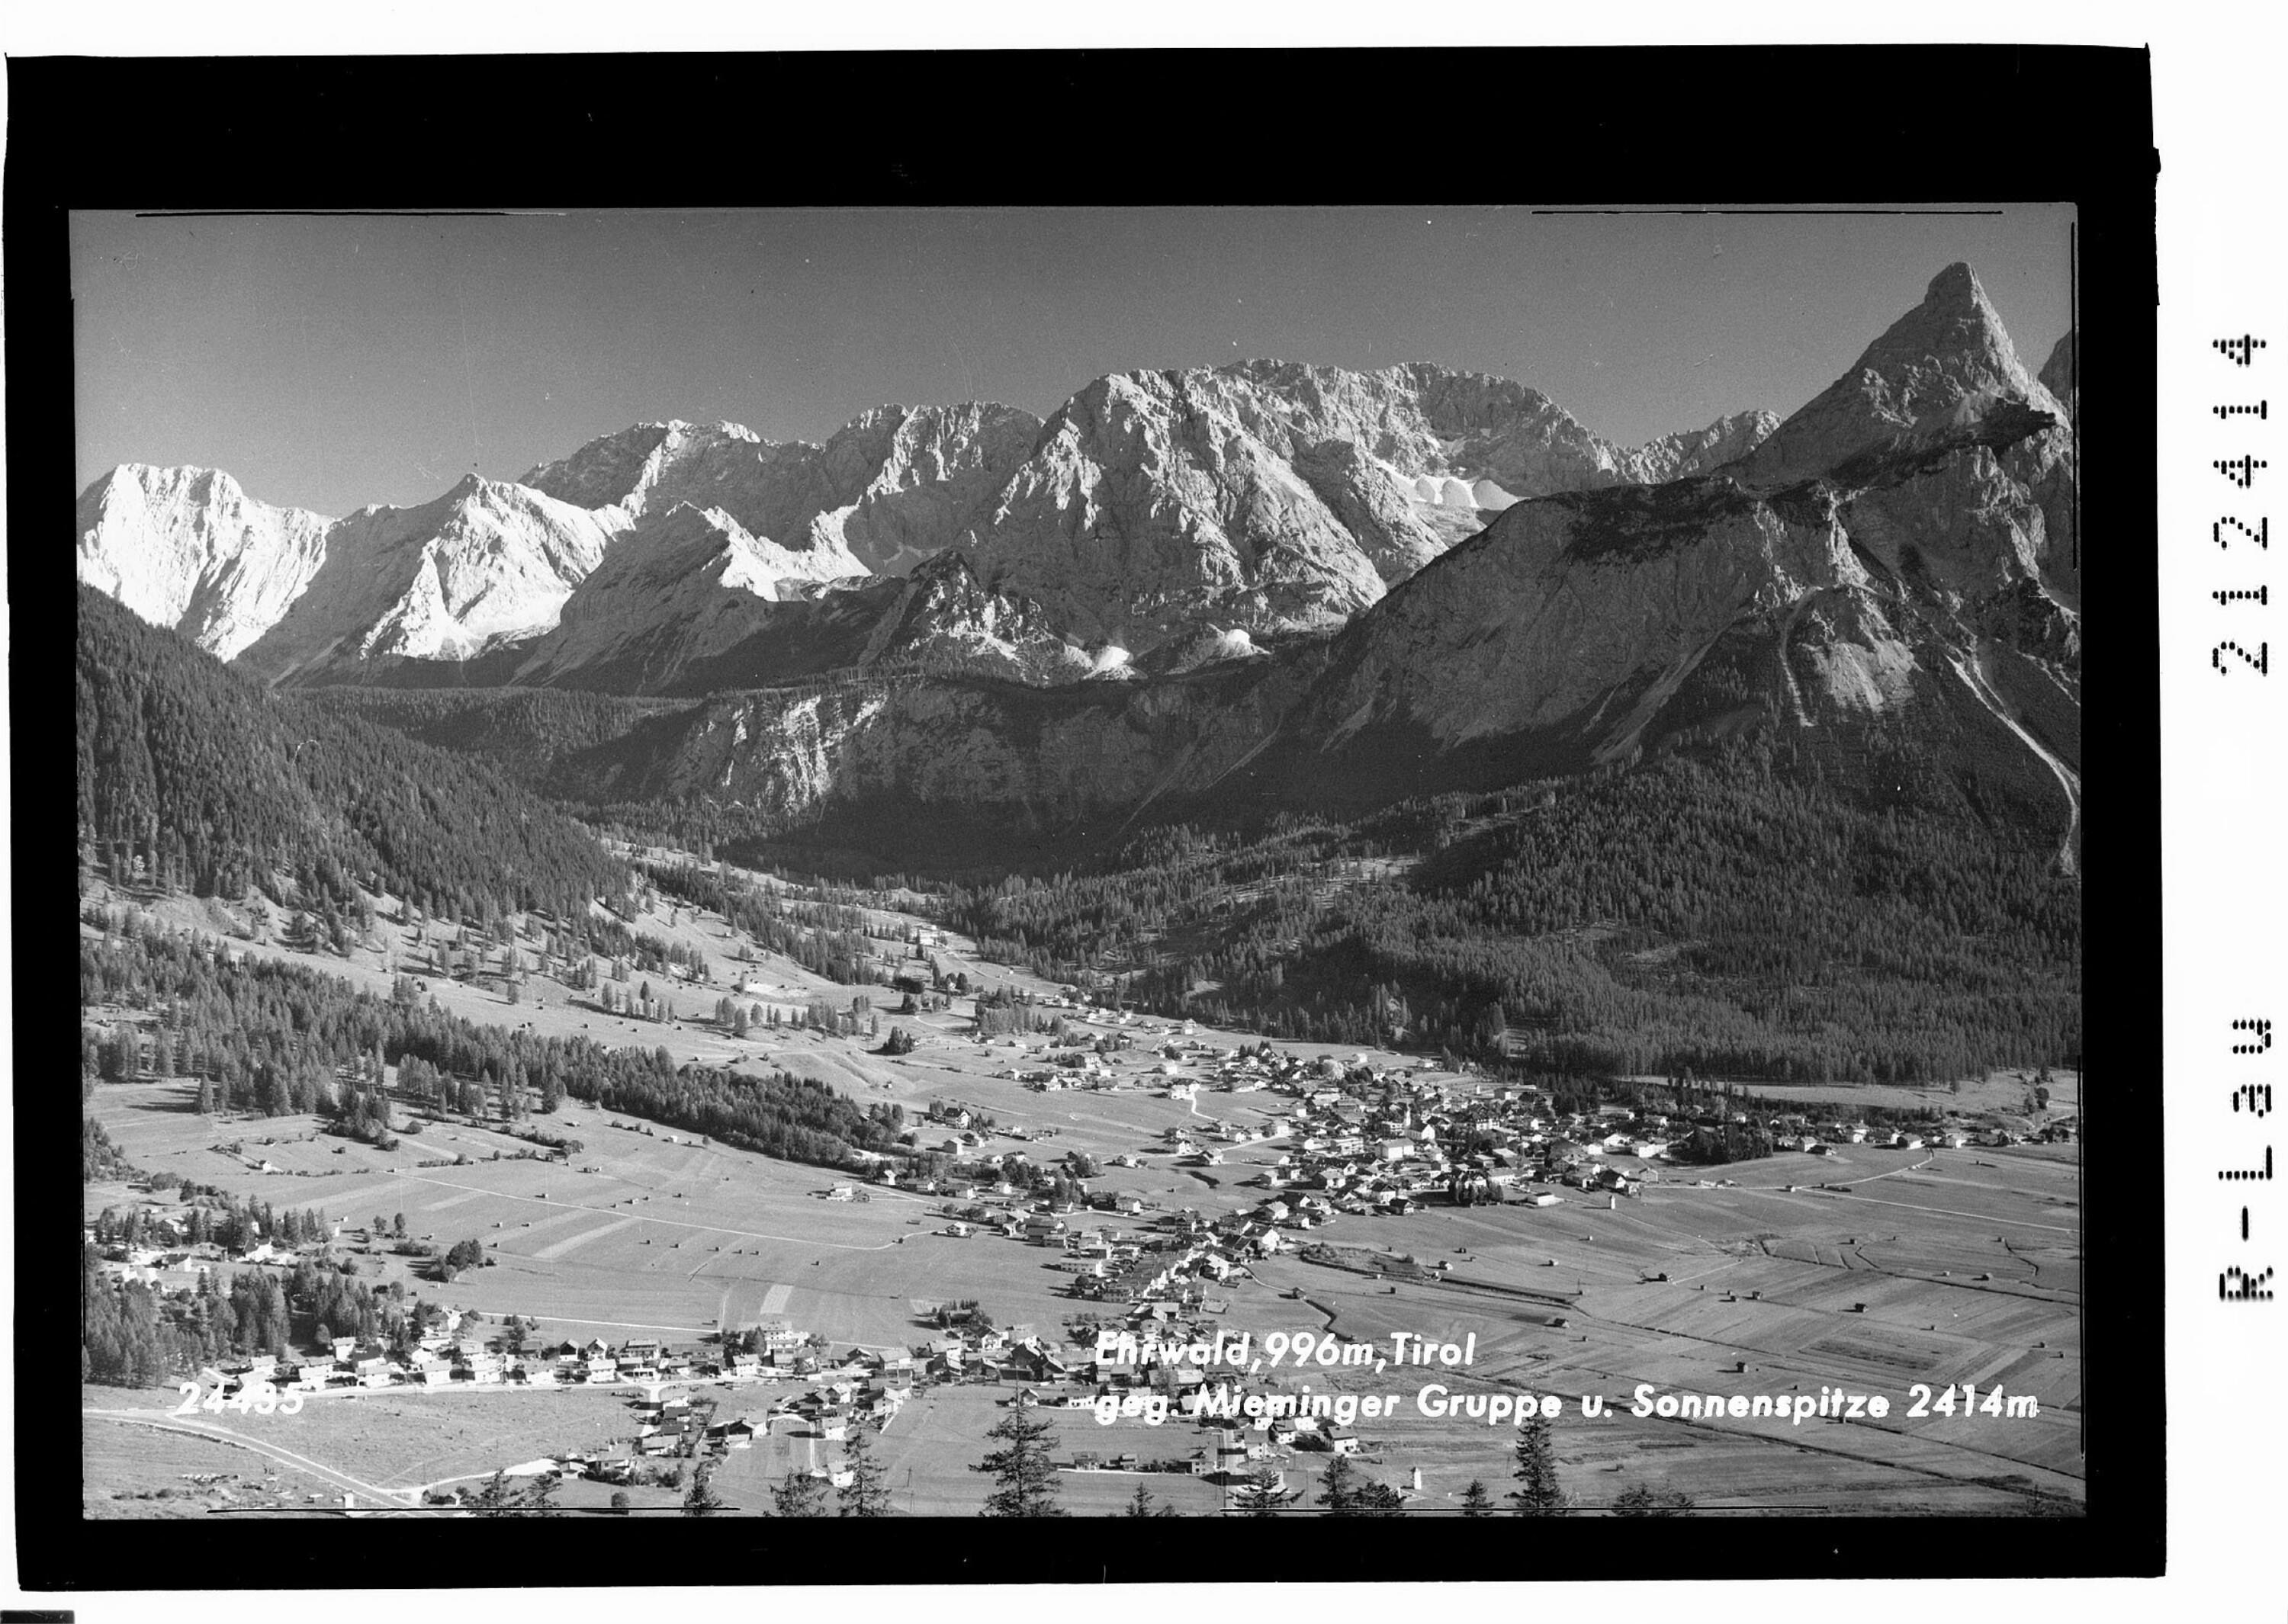 Ehrwald 996 m in Tirol gegen Mieminger Gruppe und Sonnenspitze 2414 m></div>


    <hr>
    <div class=